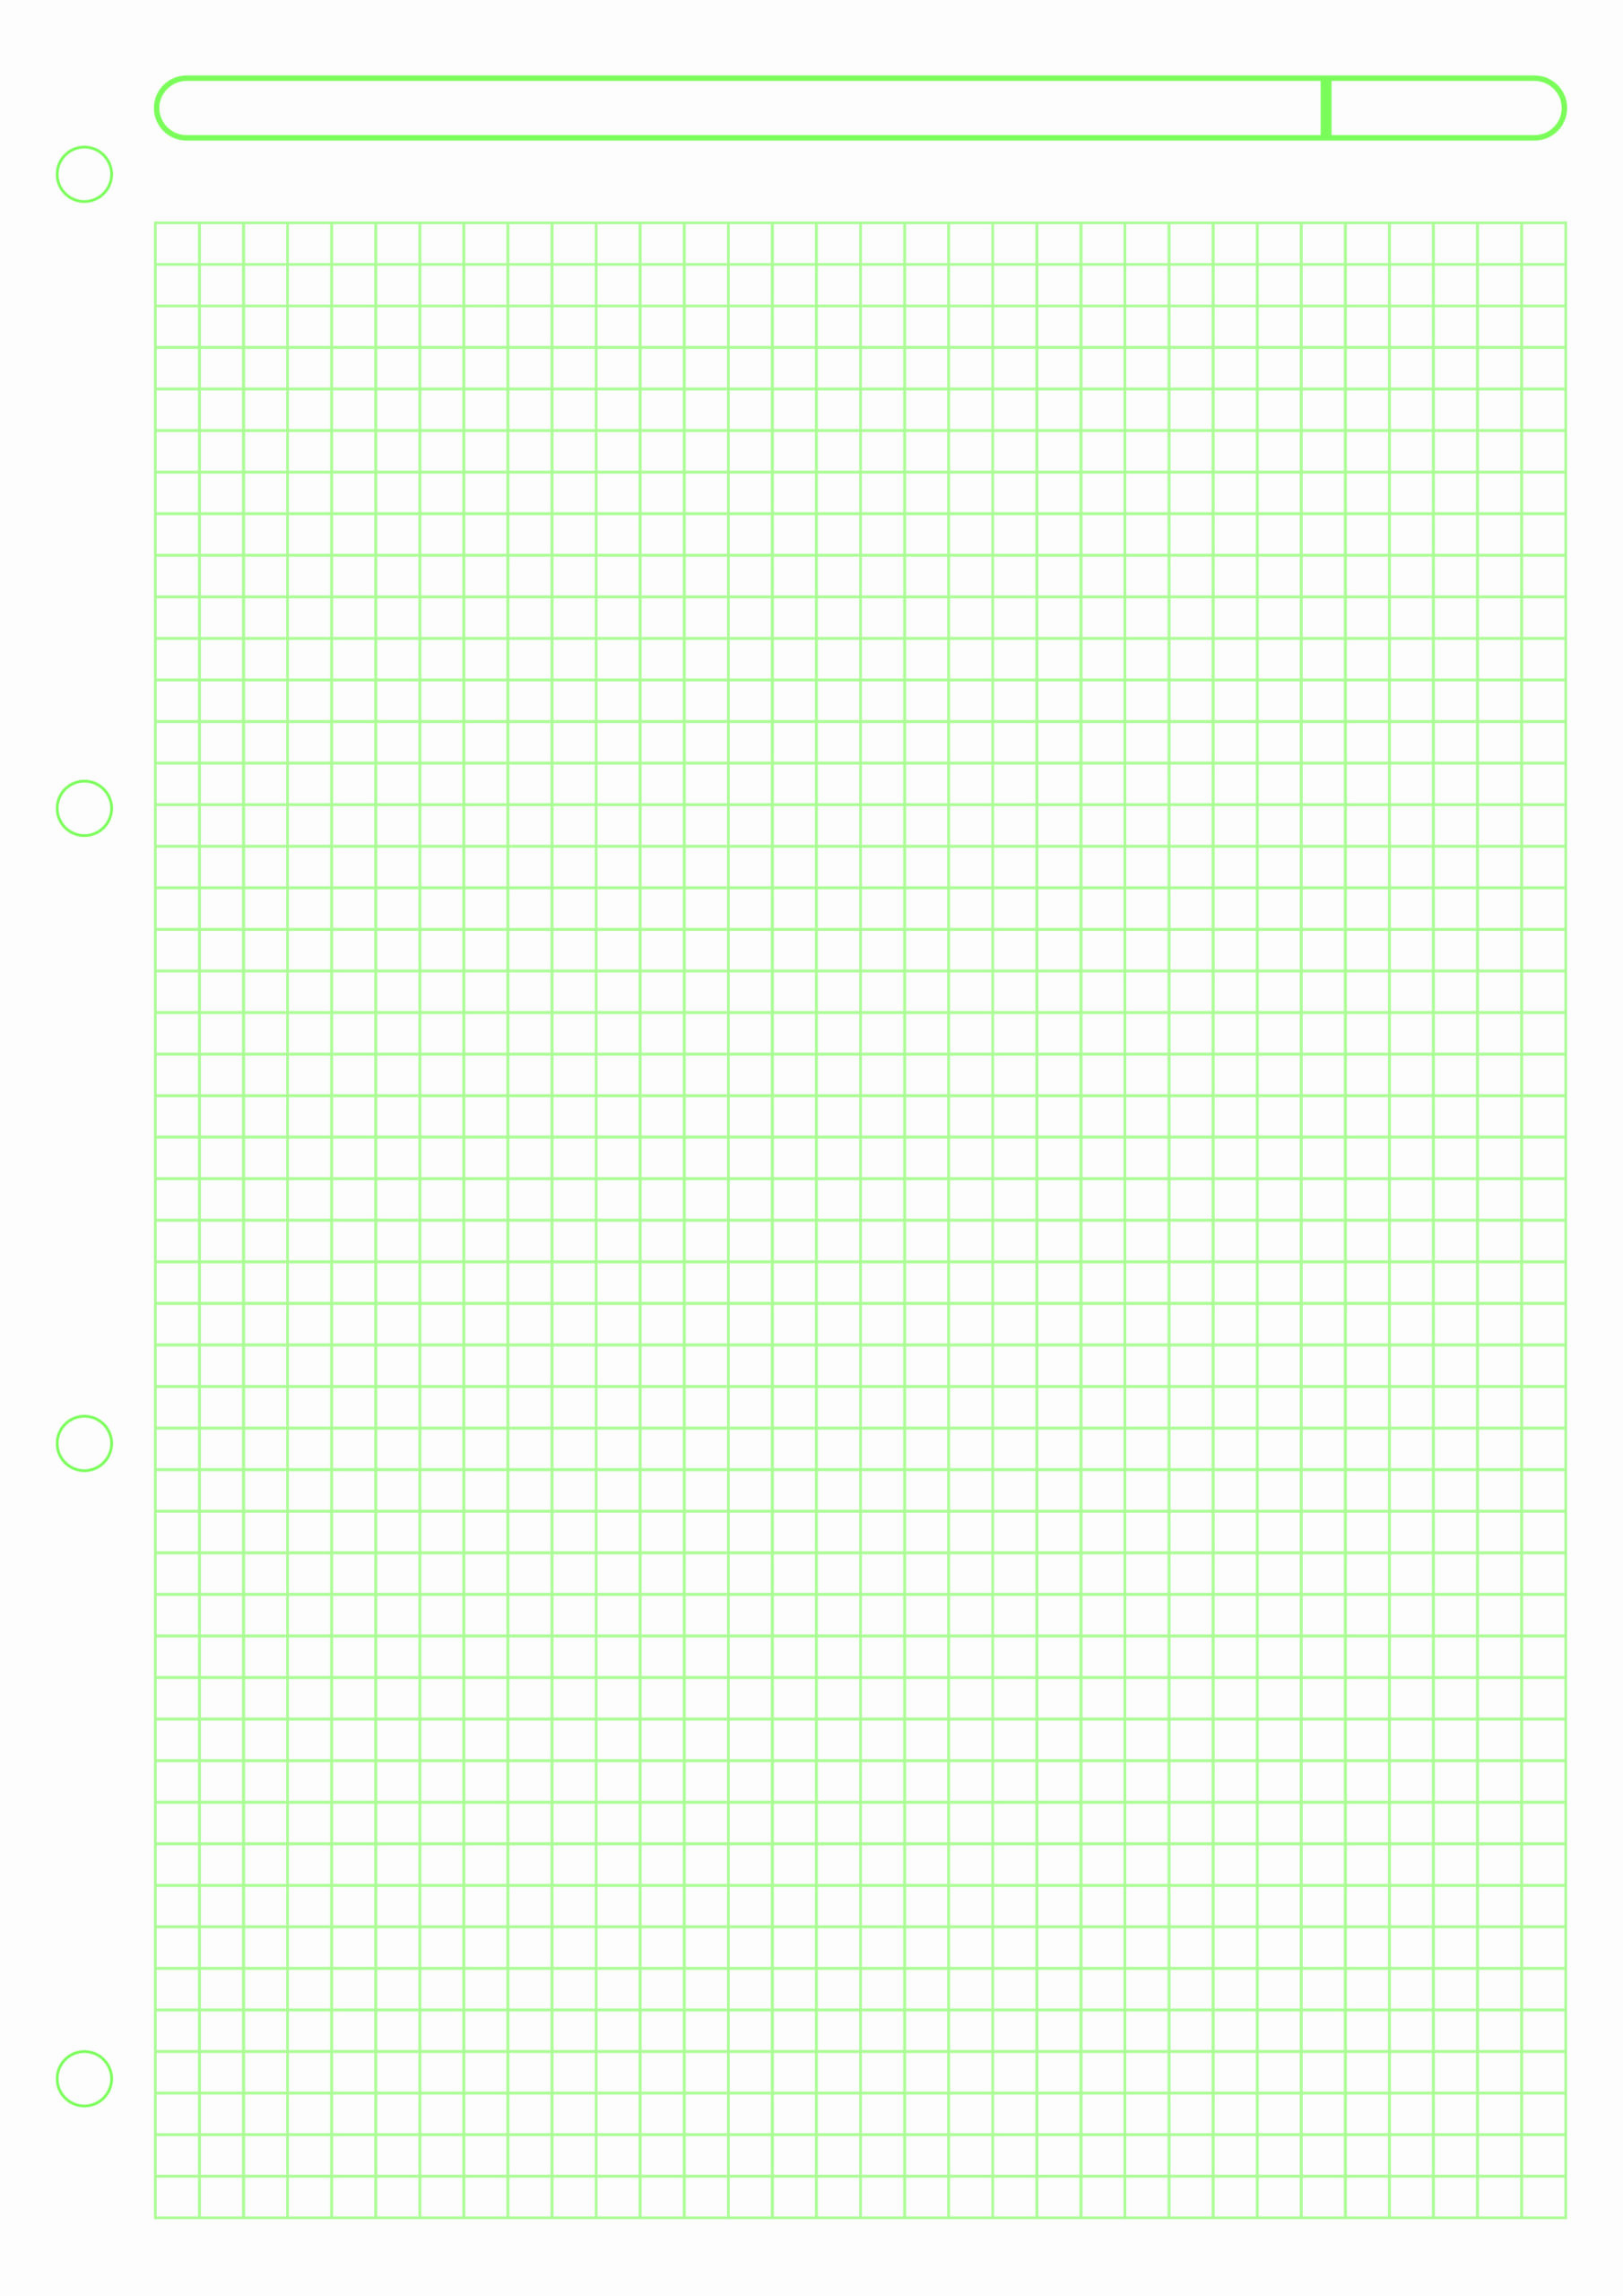 Grid paper Printable